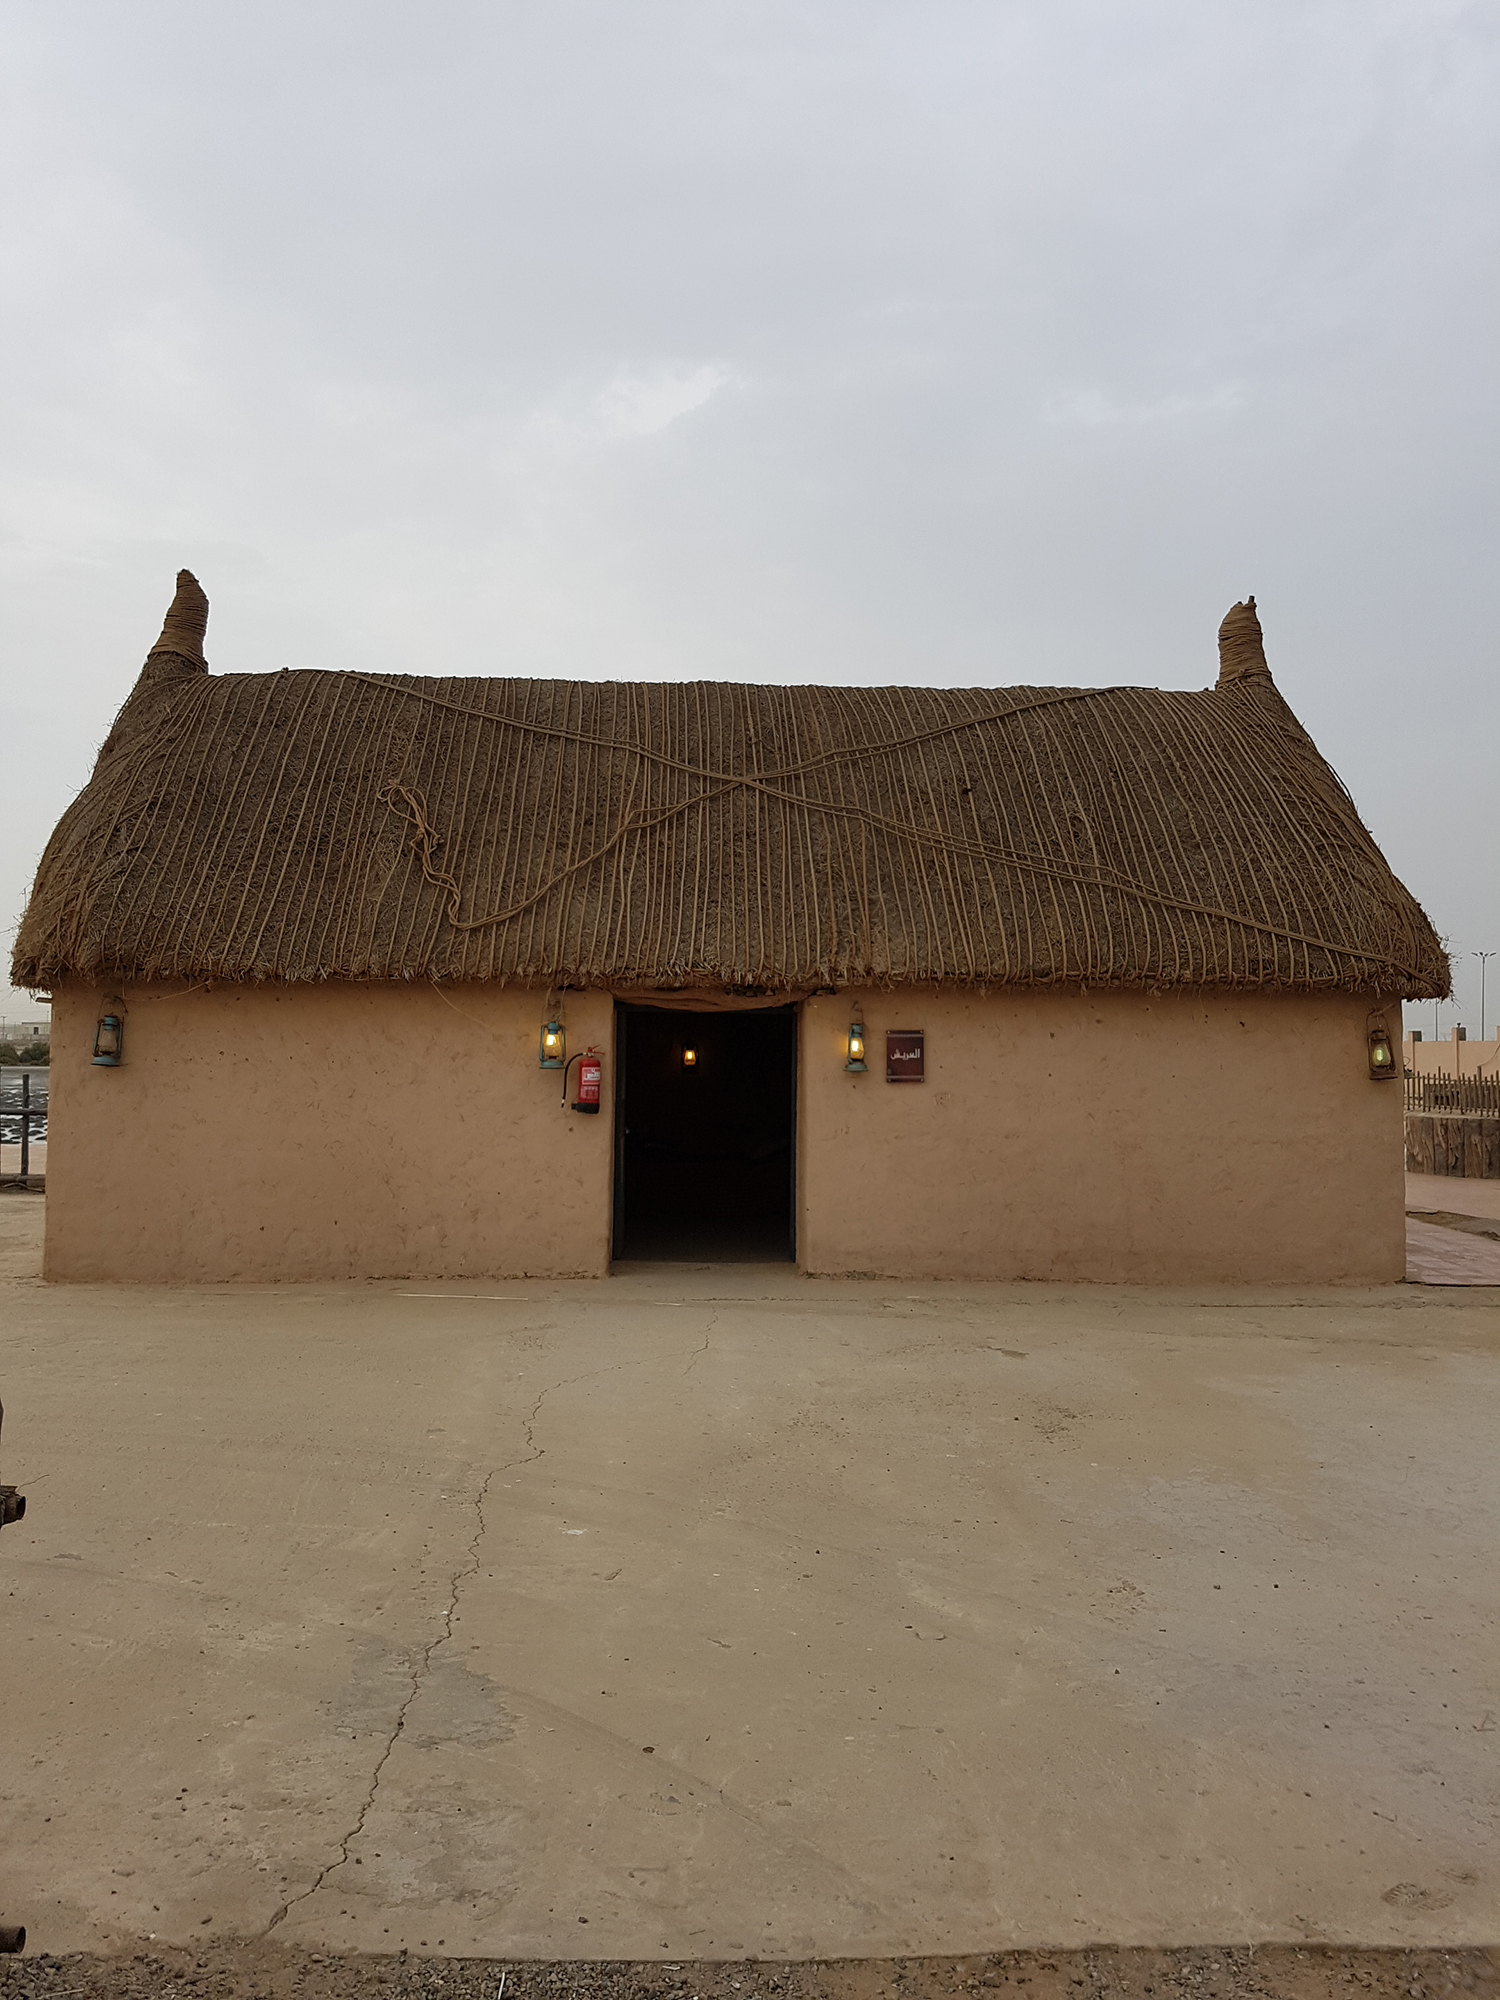 Une maison traditionnelle couramment connue sous l'appellation « Al-Arich ».